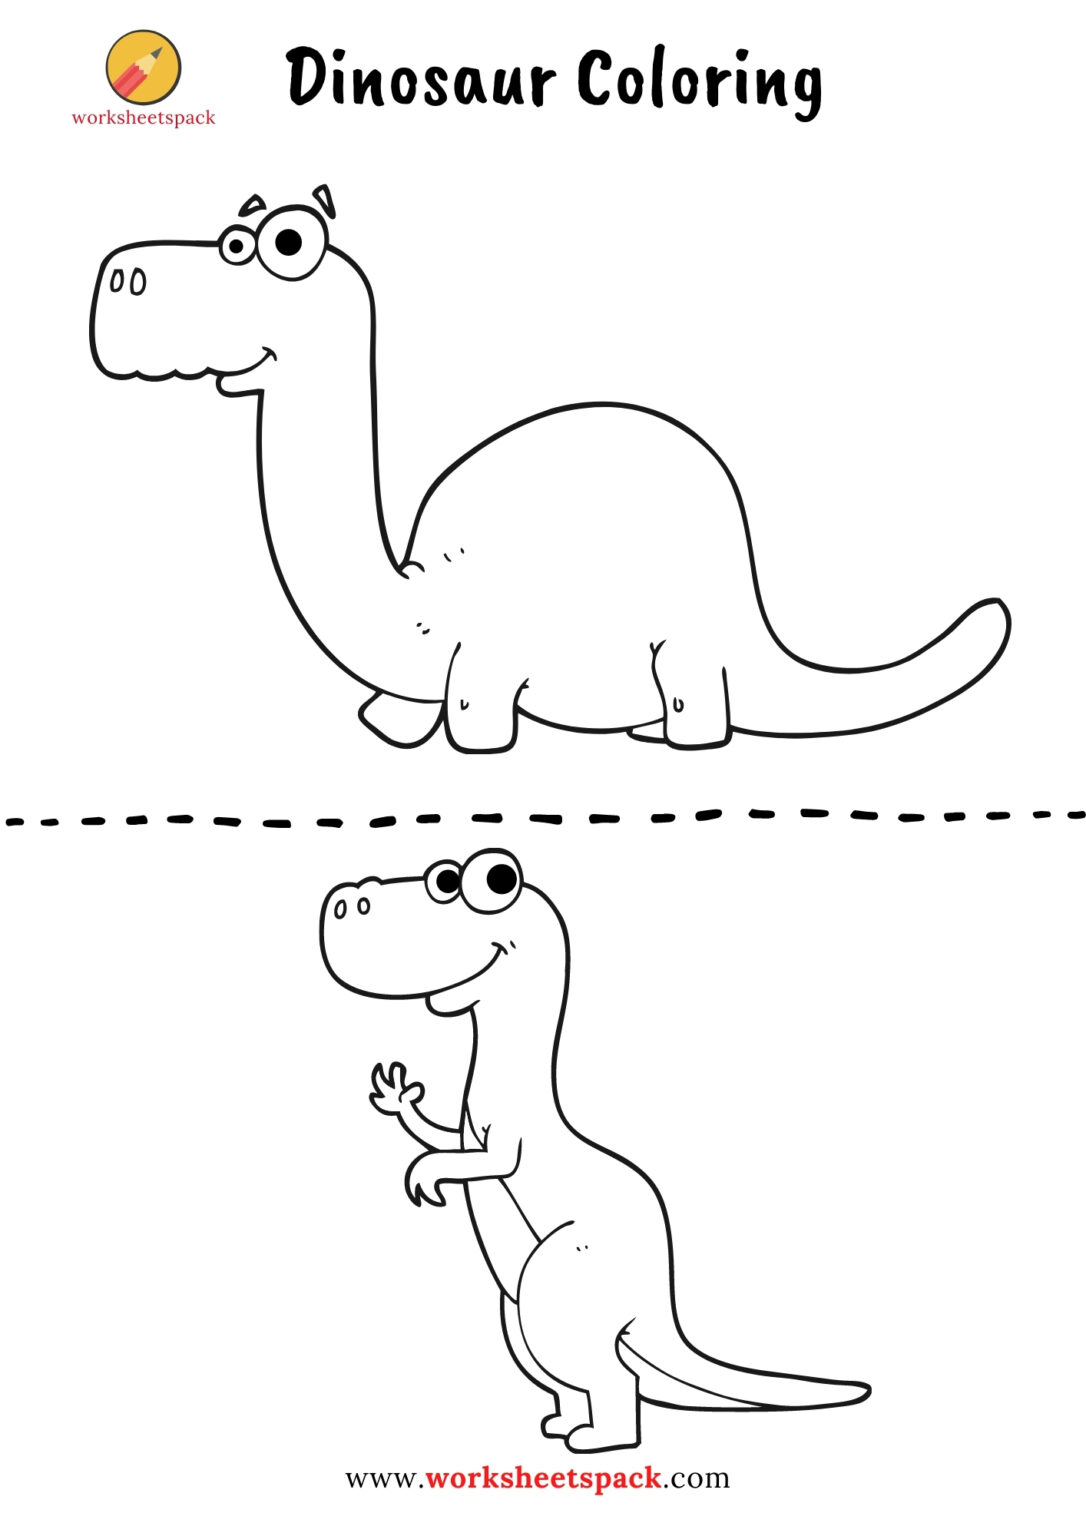 Free printable dinosaur coloring pages - worksheetspack